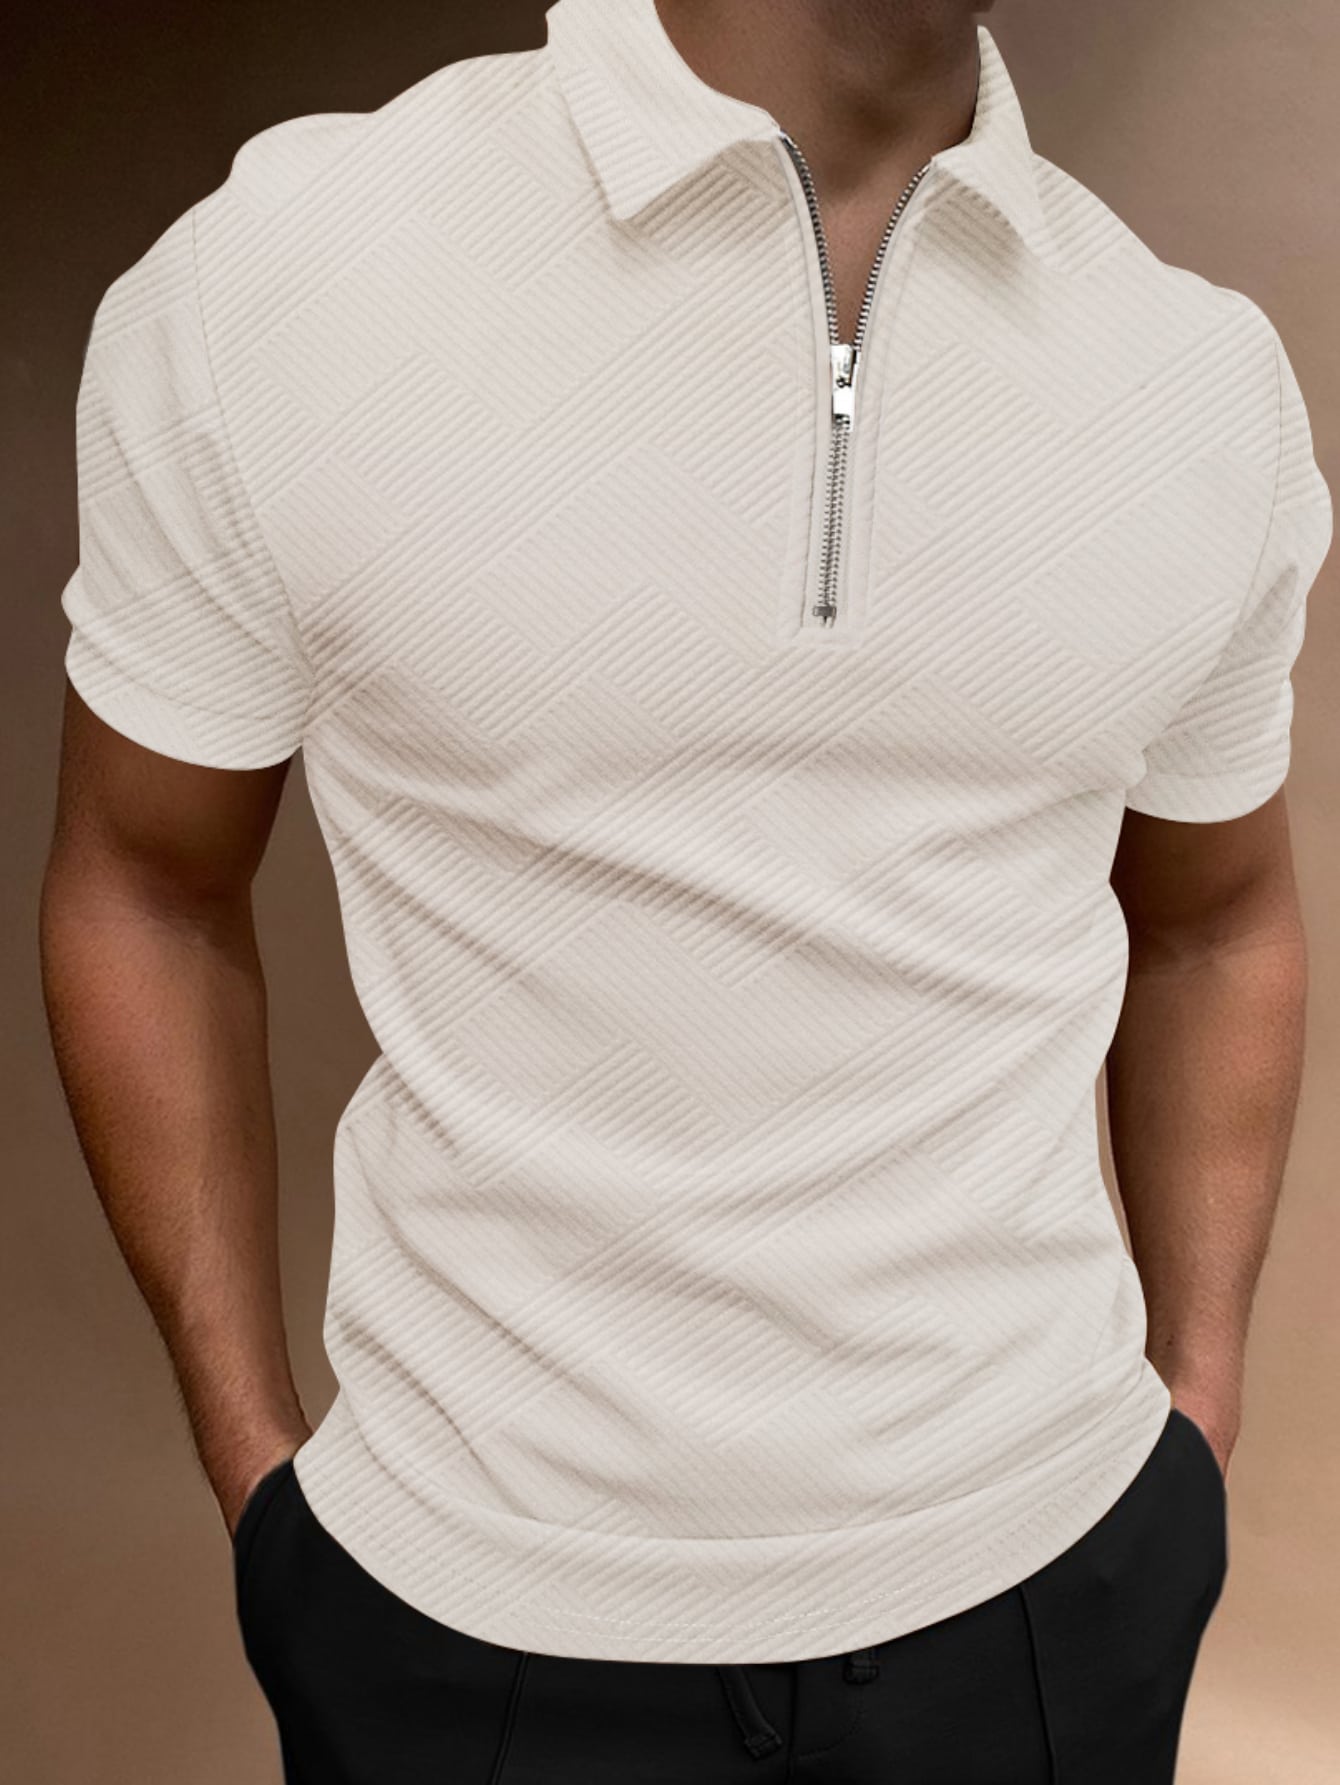 Мужская рубашка-поло с коротким рукавом Manfinity Homme с однотонной текстурой, абрикос